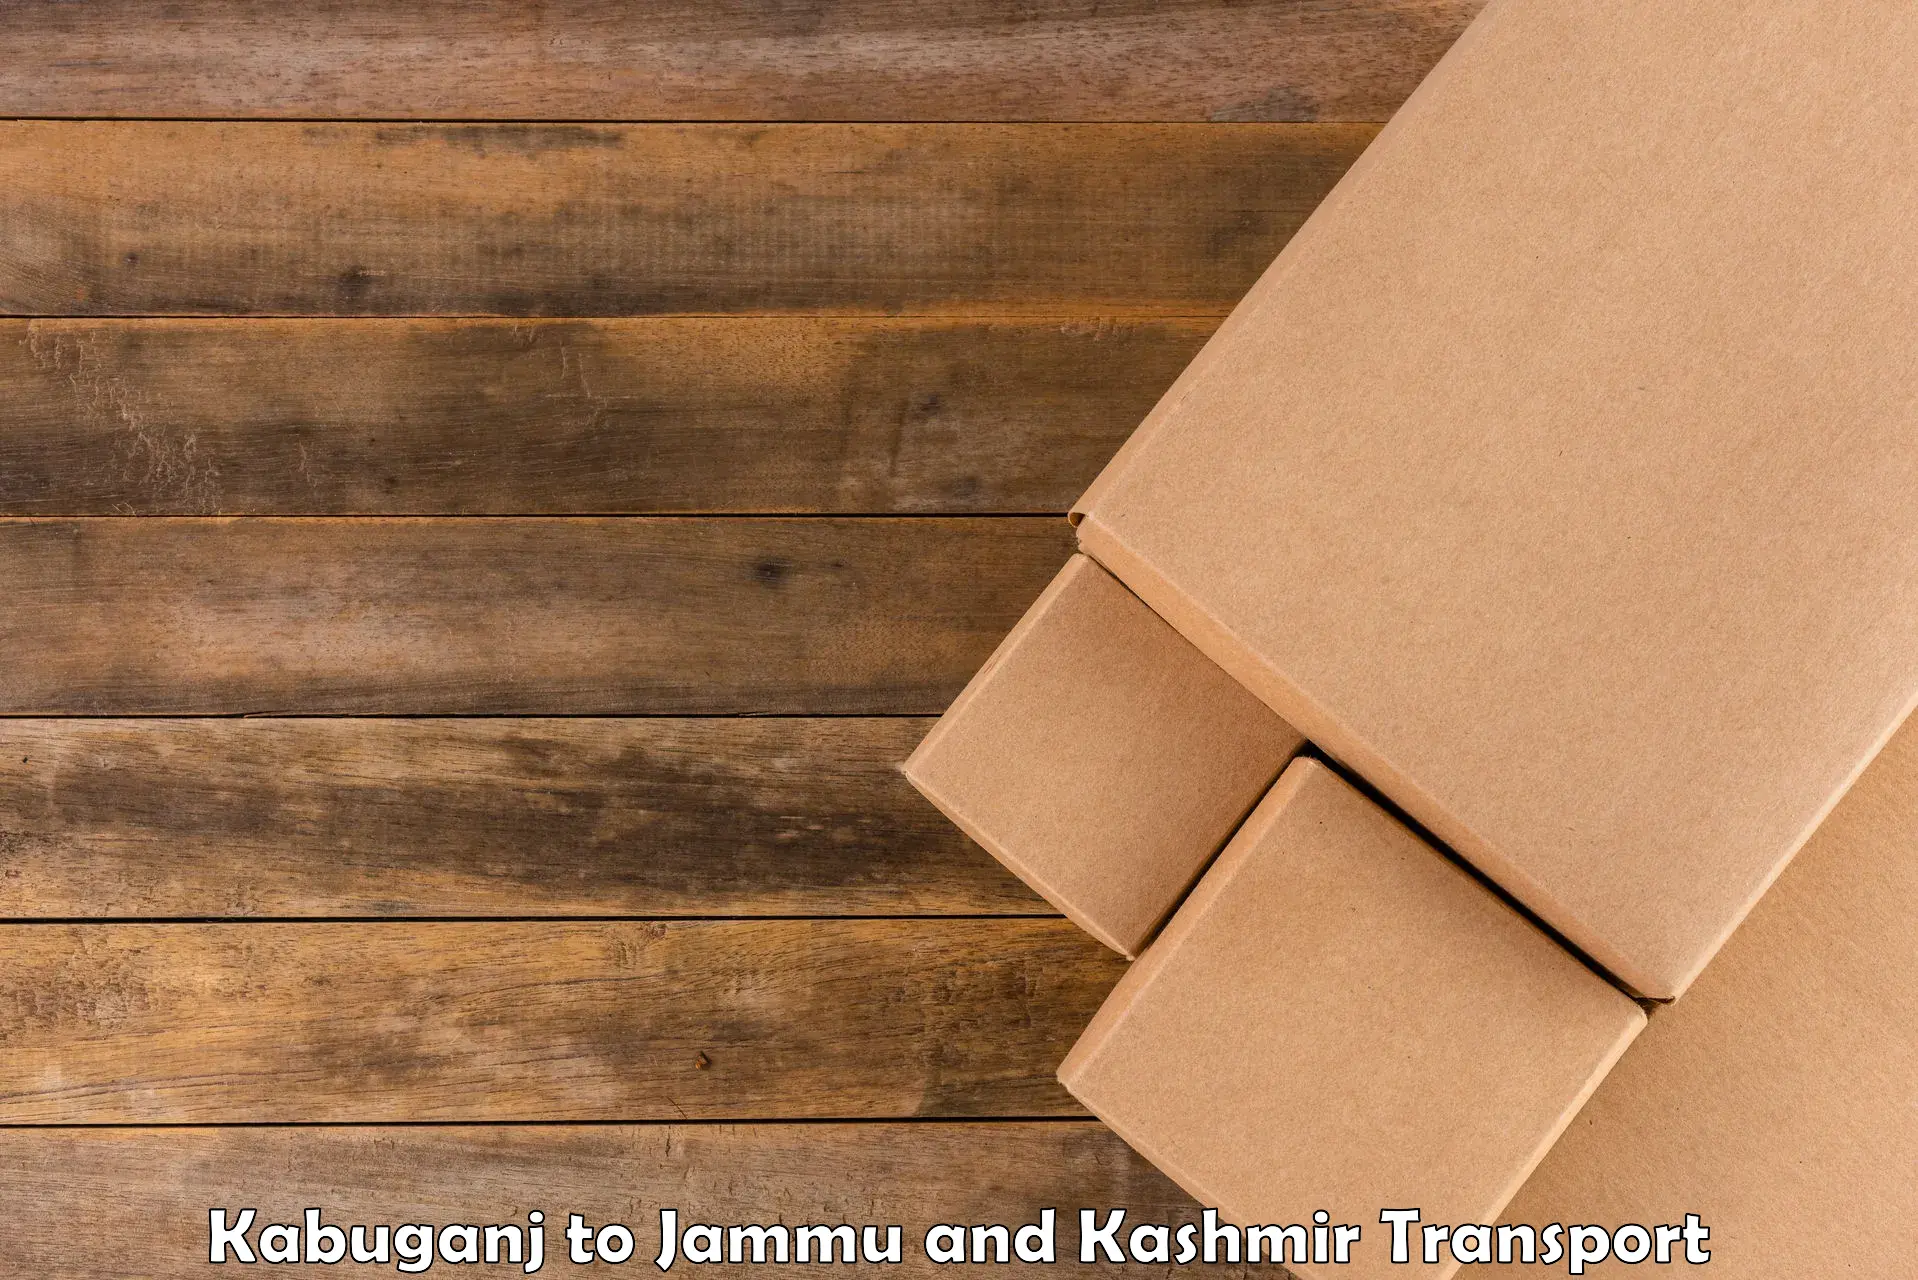 Online transport service in Kabuganj to Srinagar Kashmir